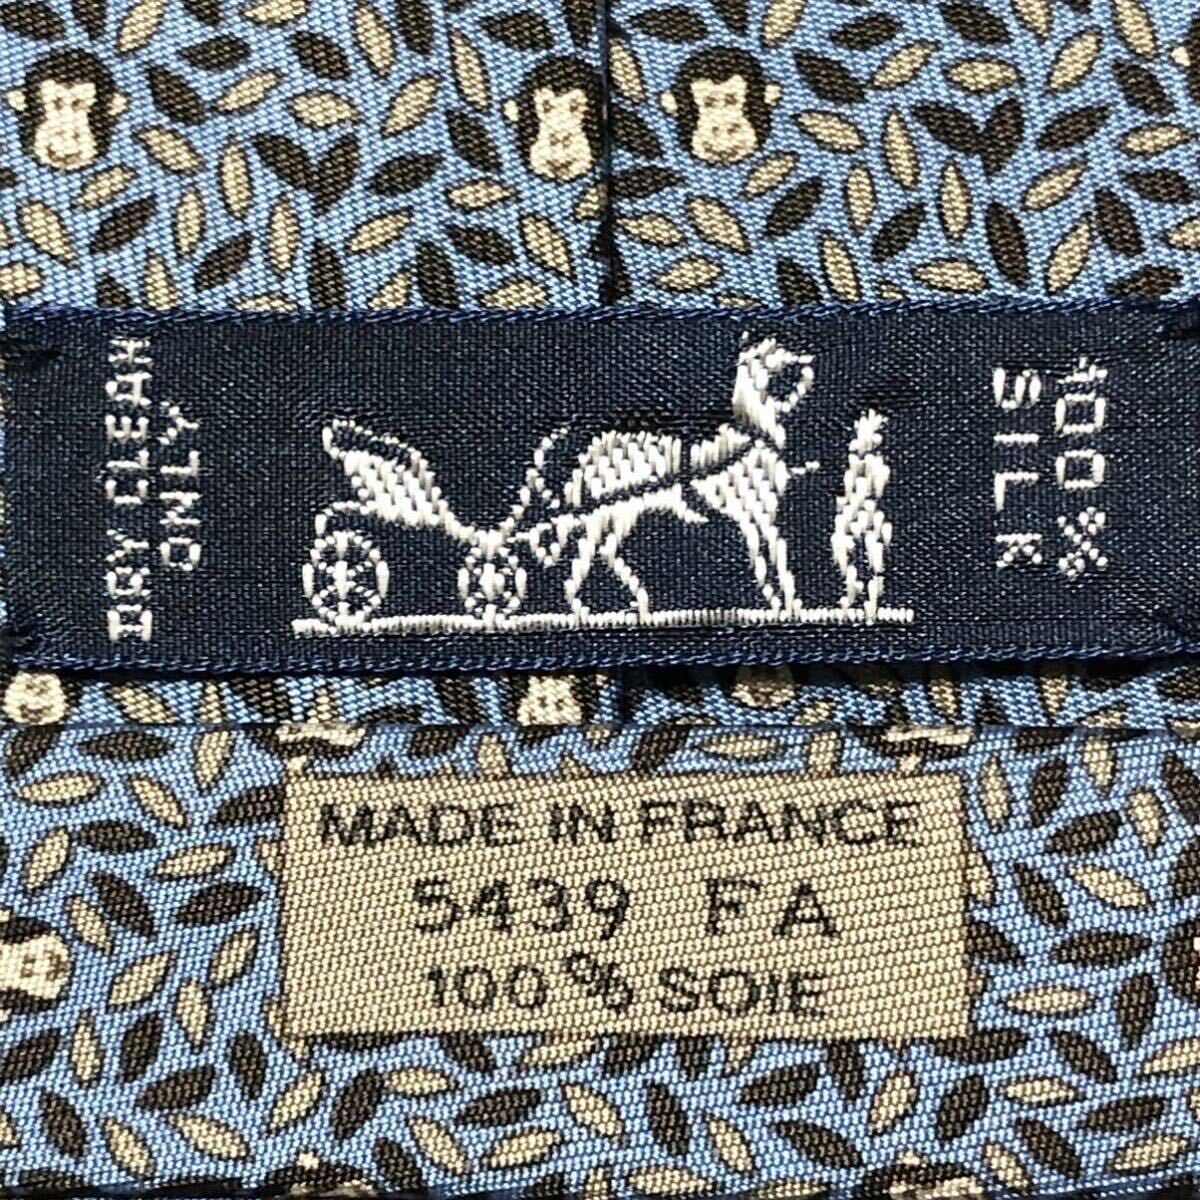 # прекрасный товар #HERMES Hermes галстук лист .. обезьяна . Monkey общий рисунок шелк 100% Франция производства оттенок голубого бизнес 